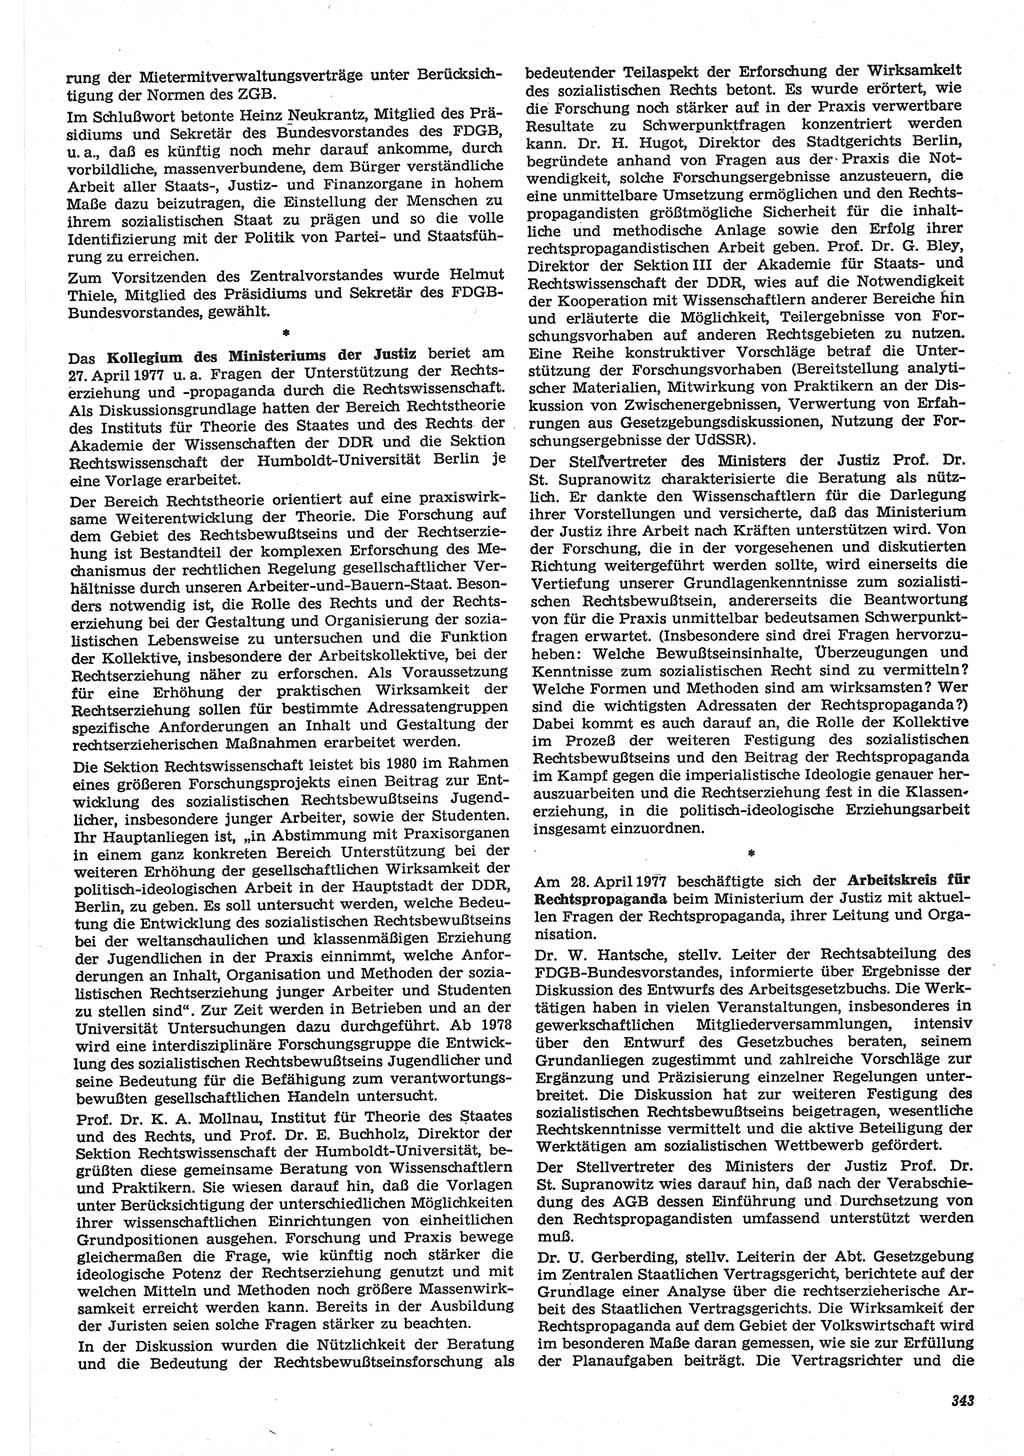 Neue Justiz (NJ), Zeitschrift für Recht und Rechtswissenschaft-Zeitschrift, sozialistisches Recht und Gesetzlichkeit, 31. Jahrgang 1977, Seite 343 (NJ DDR 1977, S. 343)